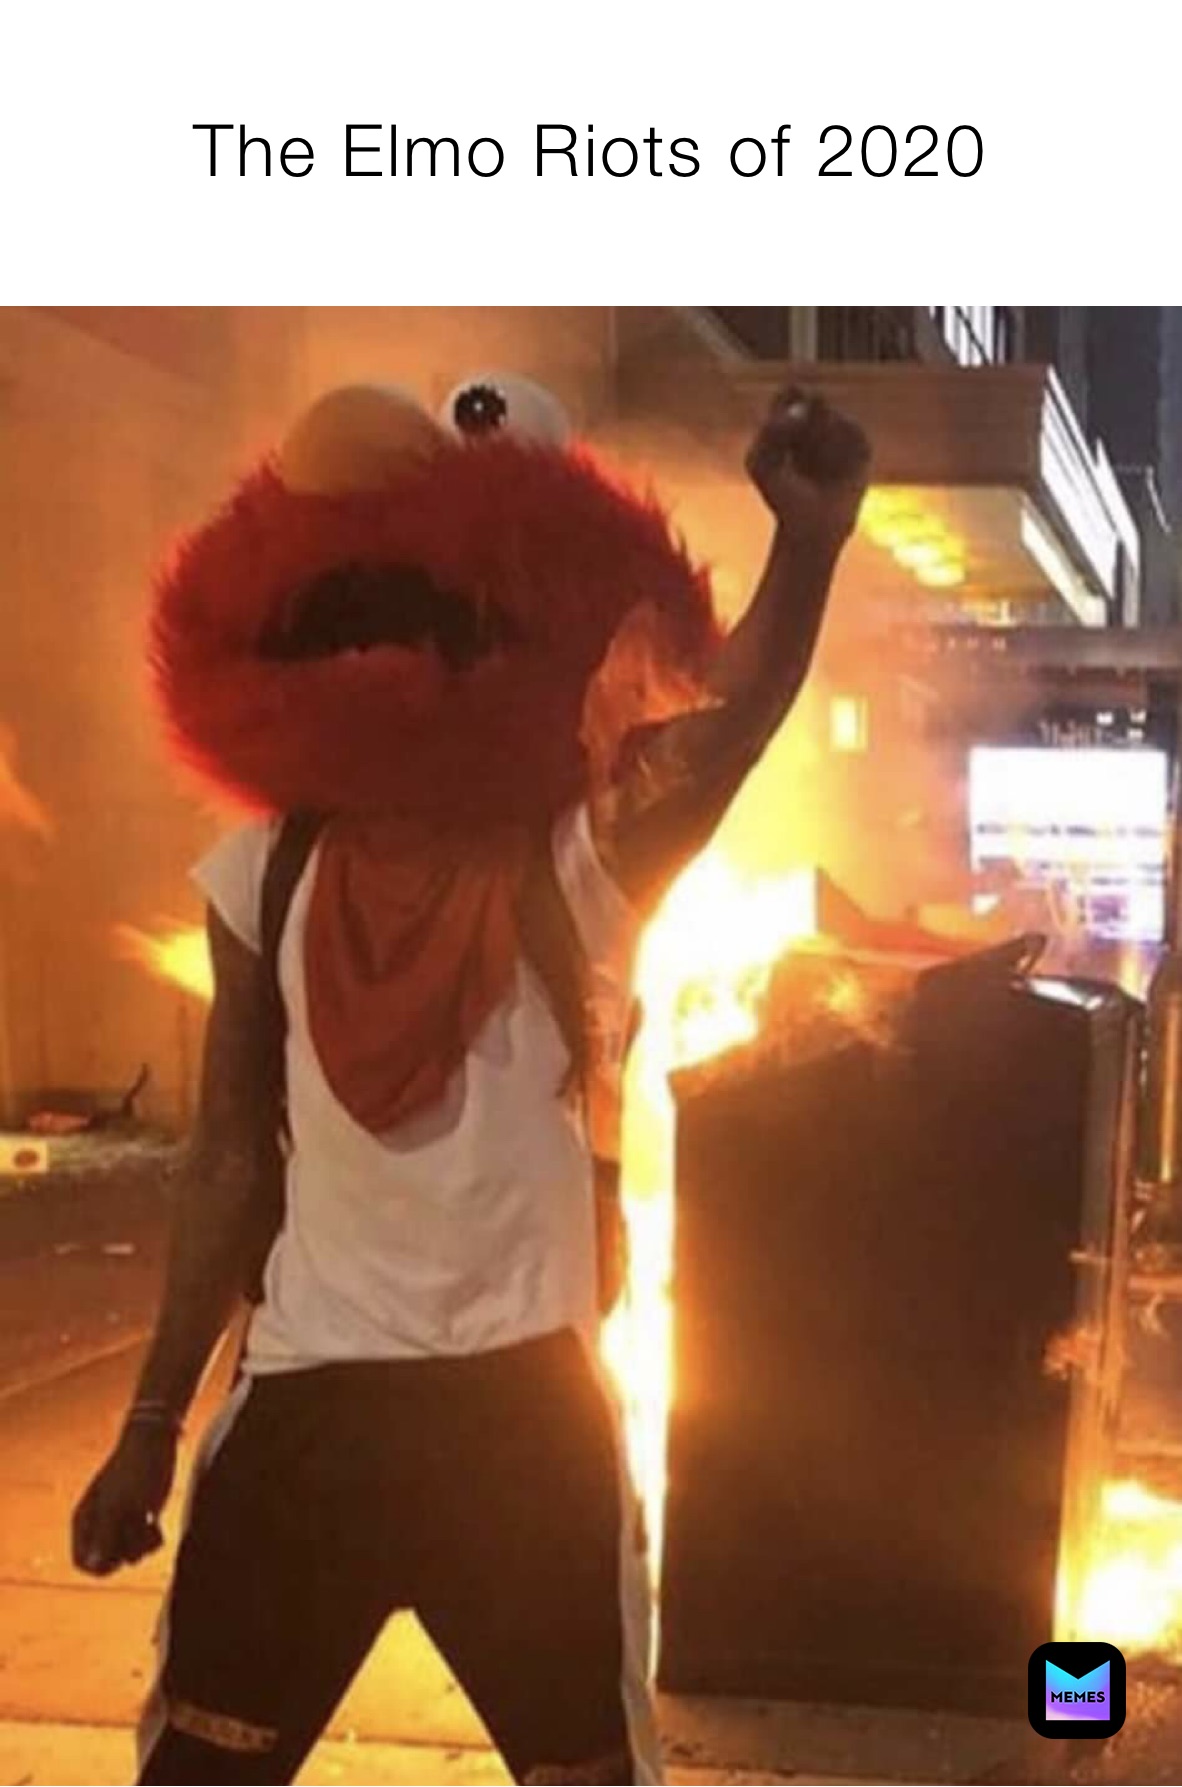 The Elmo Riots of 2020